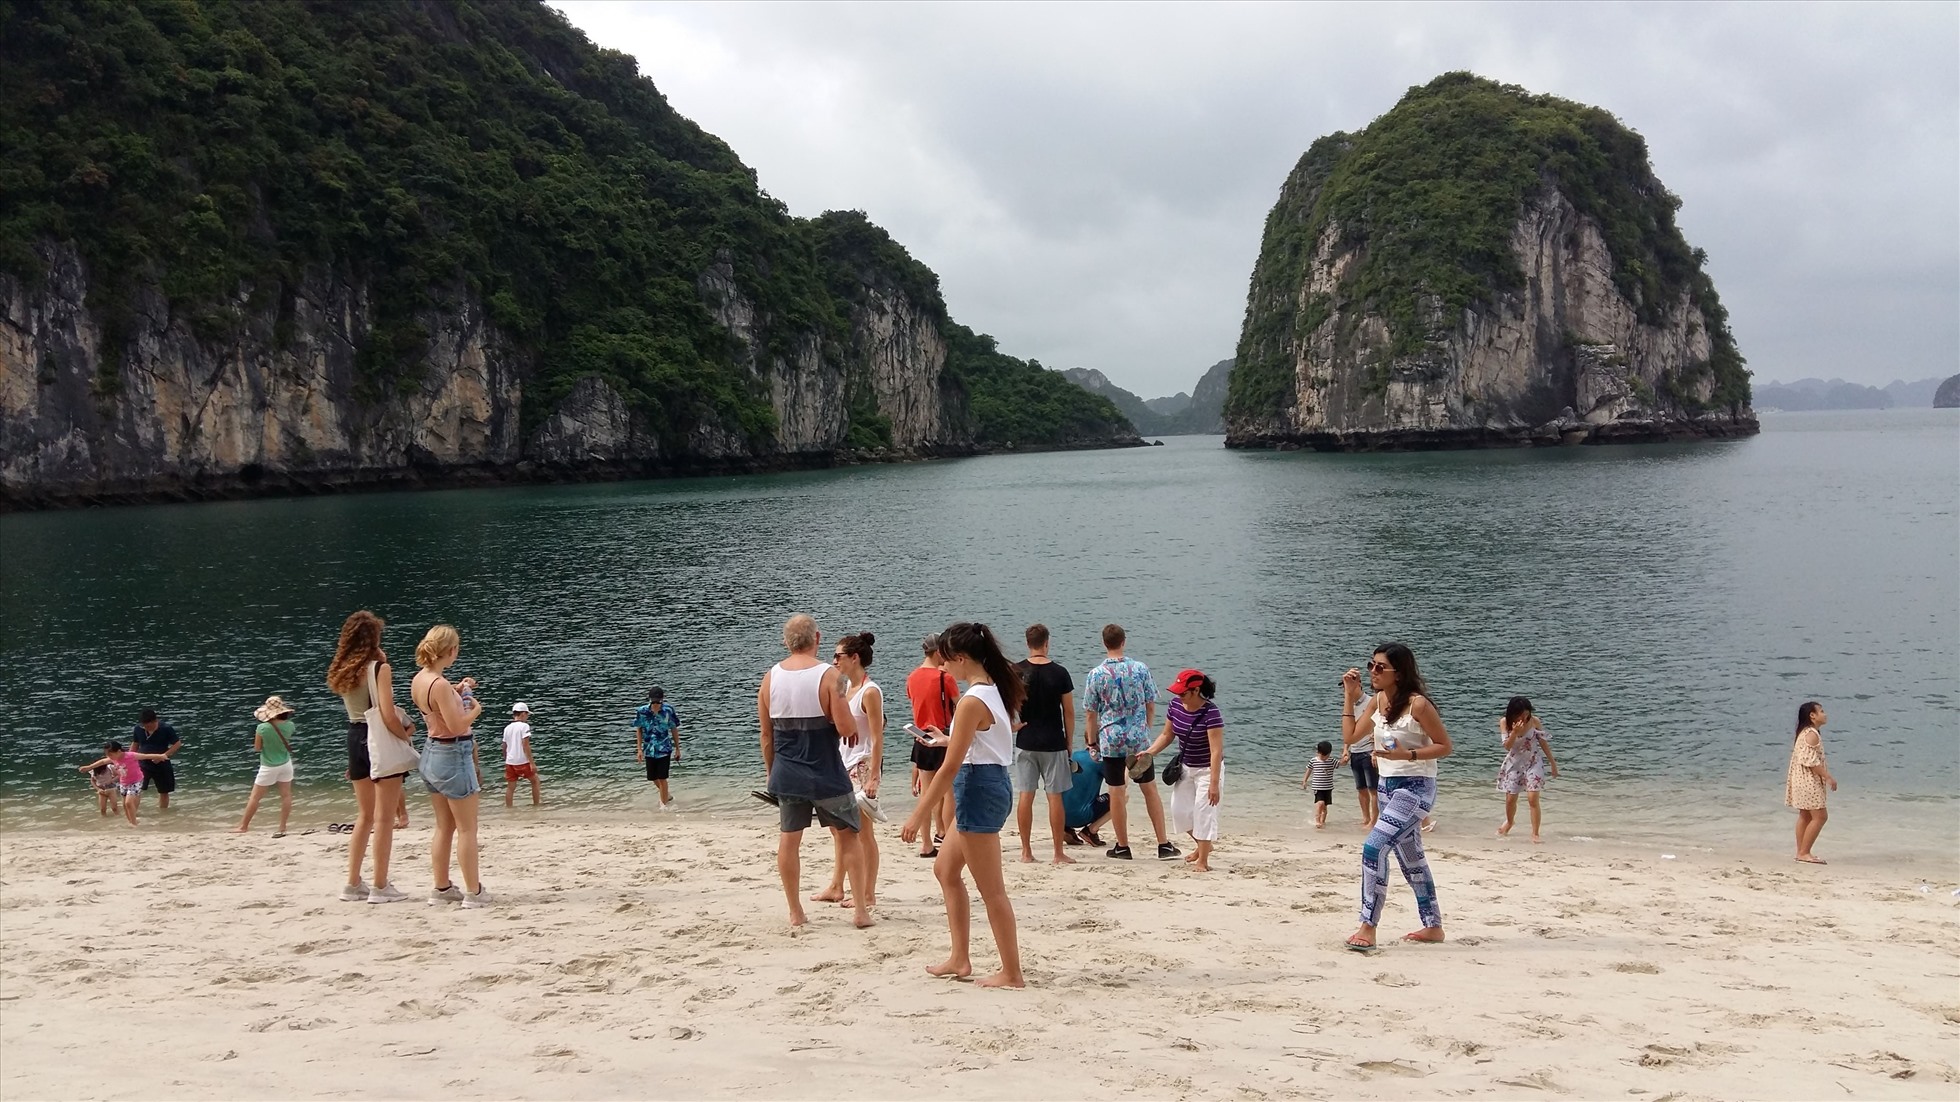 Bãi tắm đẹp, nước biển trong xanh, thời tiết nóng nực nhưng du khách cũng không được tắm nên chỉ đứng trên bãi biển ngắm cảnh. Ảnh: Nguyễn Hùng